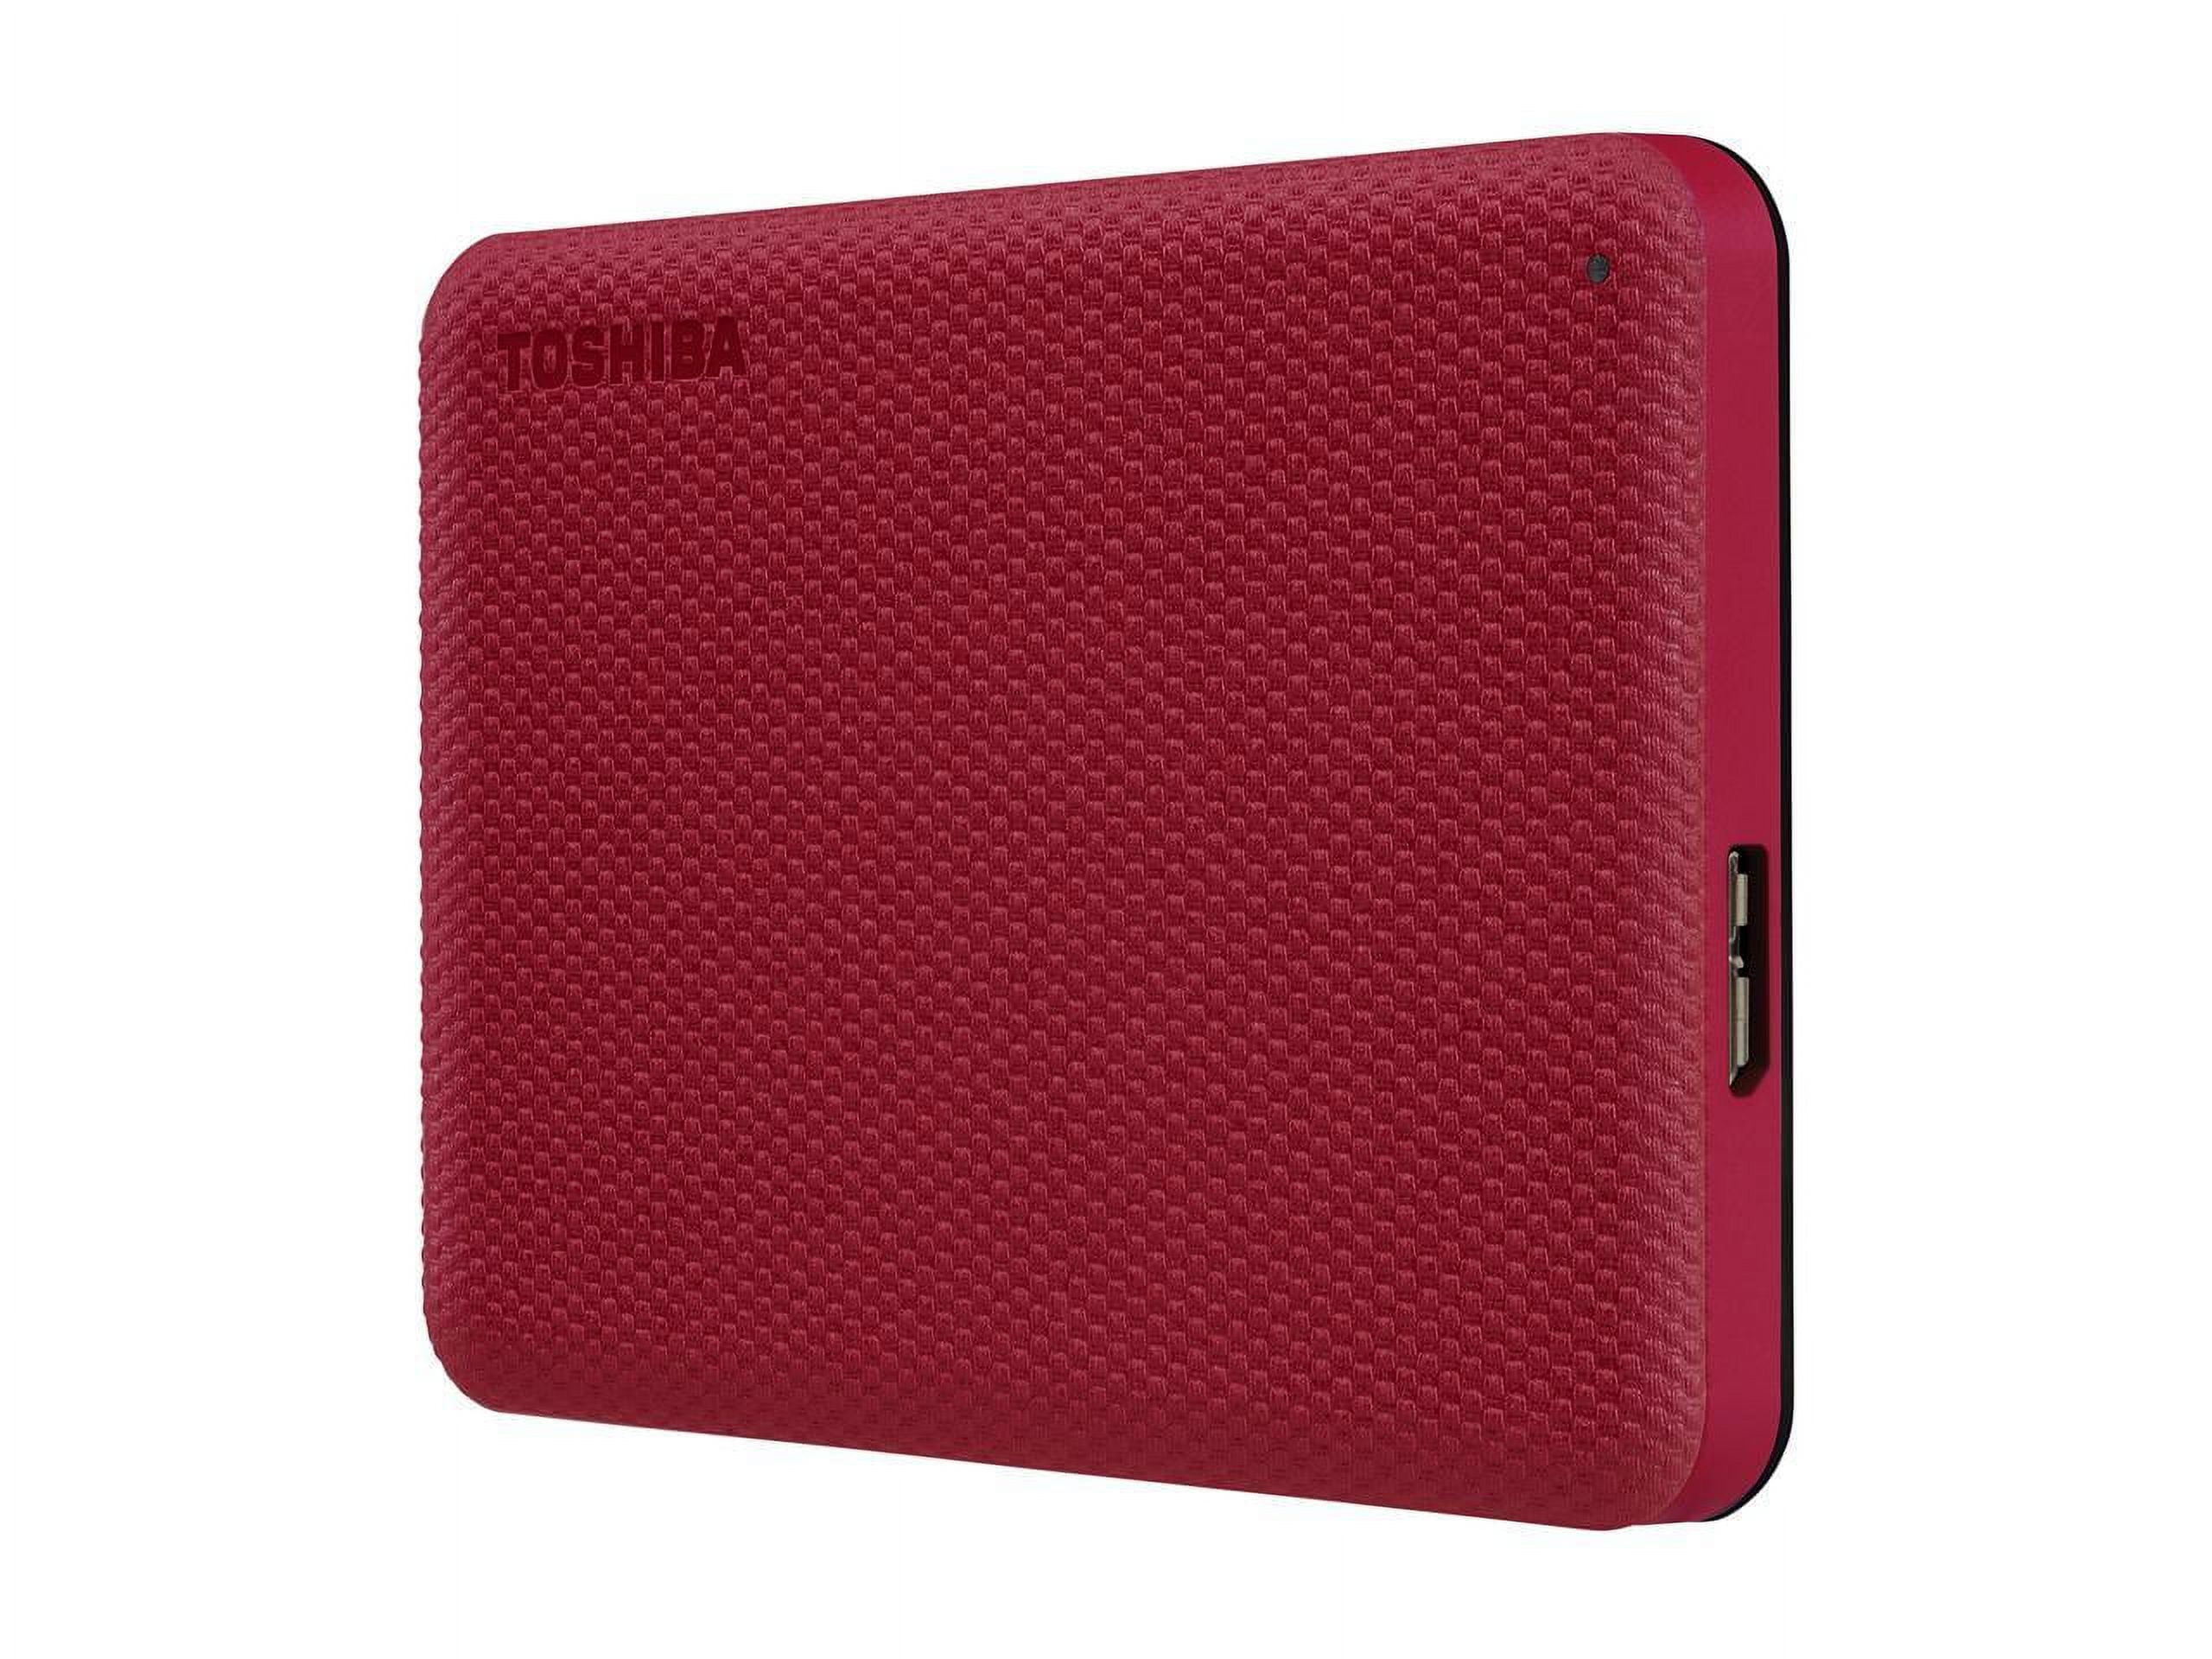 Toshiba Canvio 1TB Hard Advance Drive Portable RED